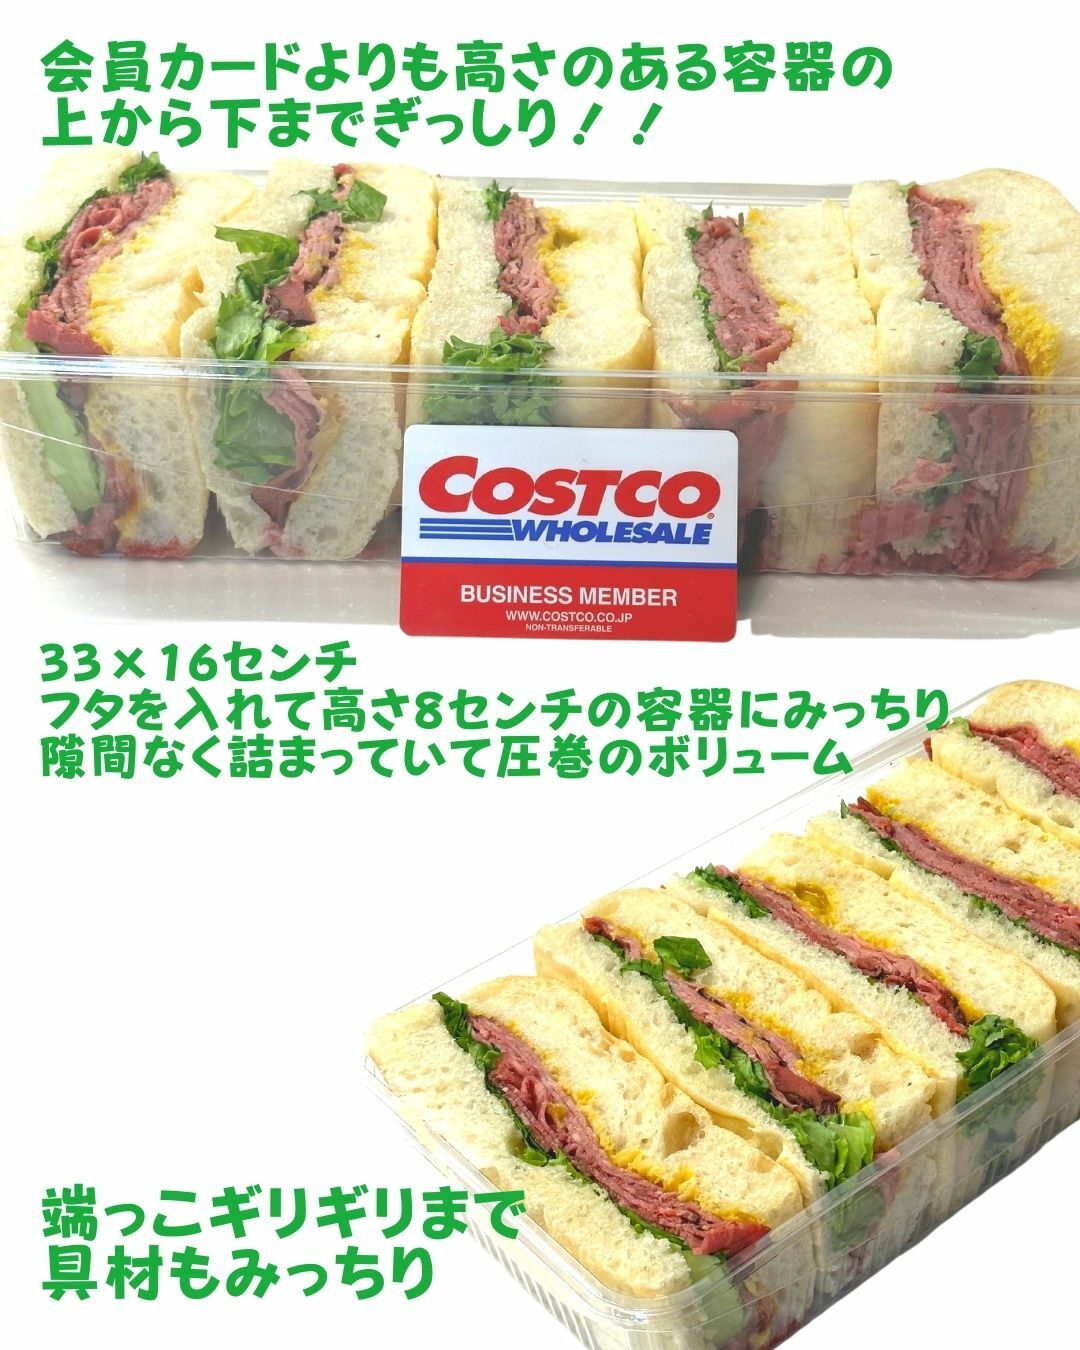 【コストコ】新商品ローストビーフチャバタサンドイッチ